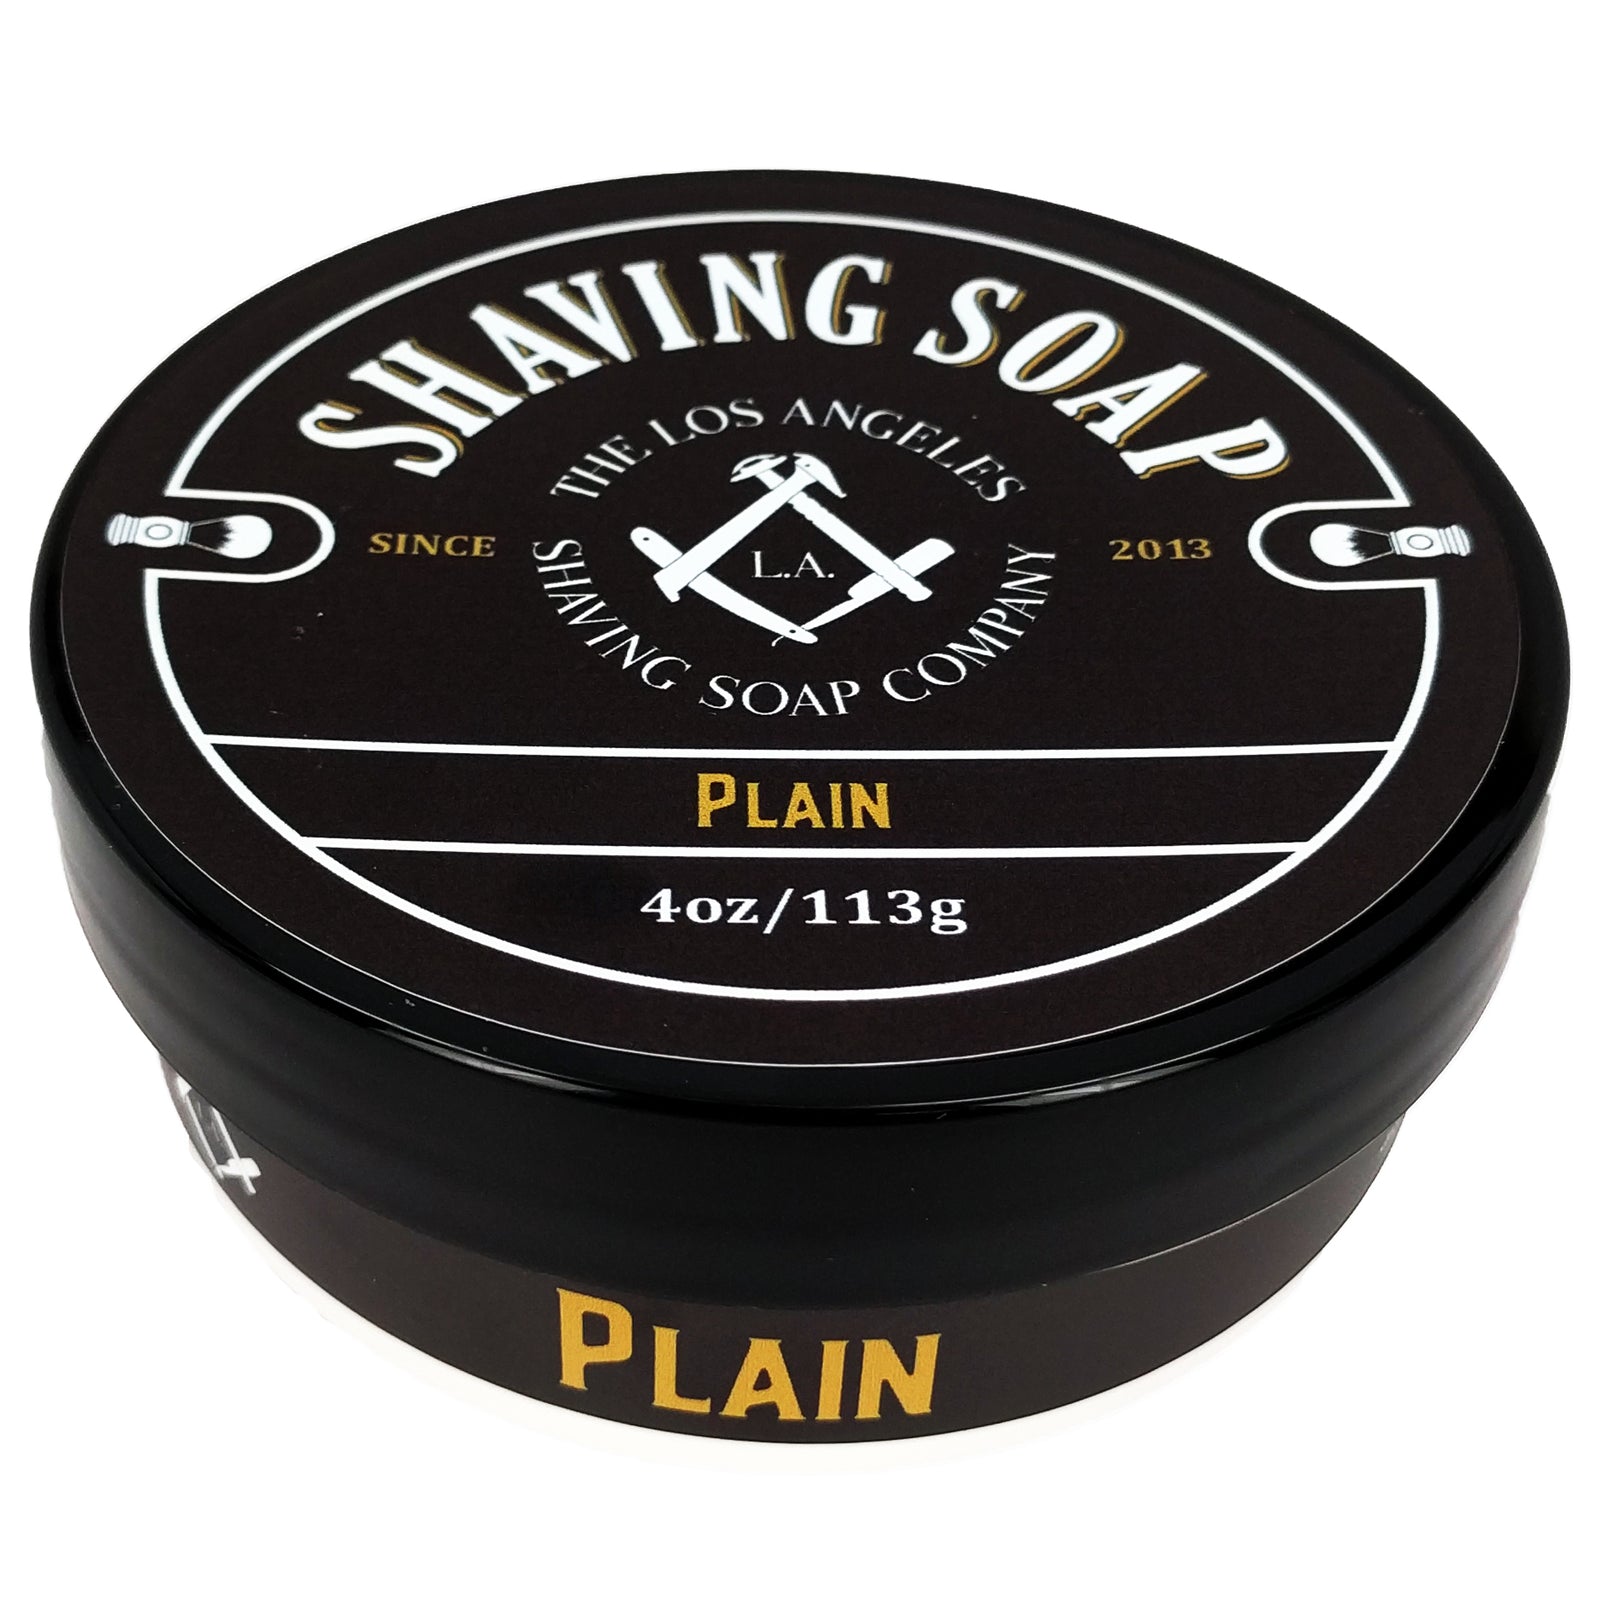 LA Shaving Soap Co – Plain Shaving Soap